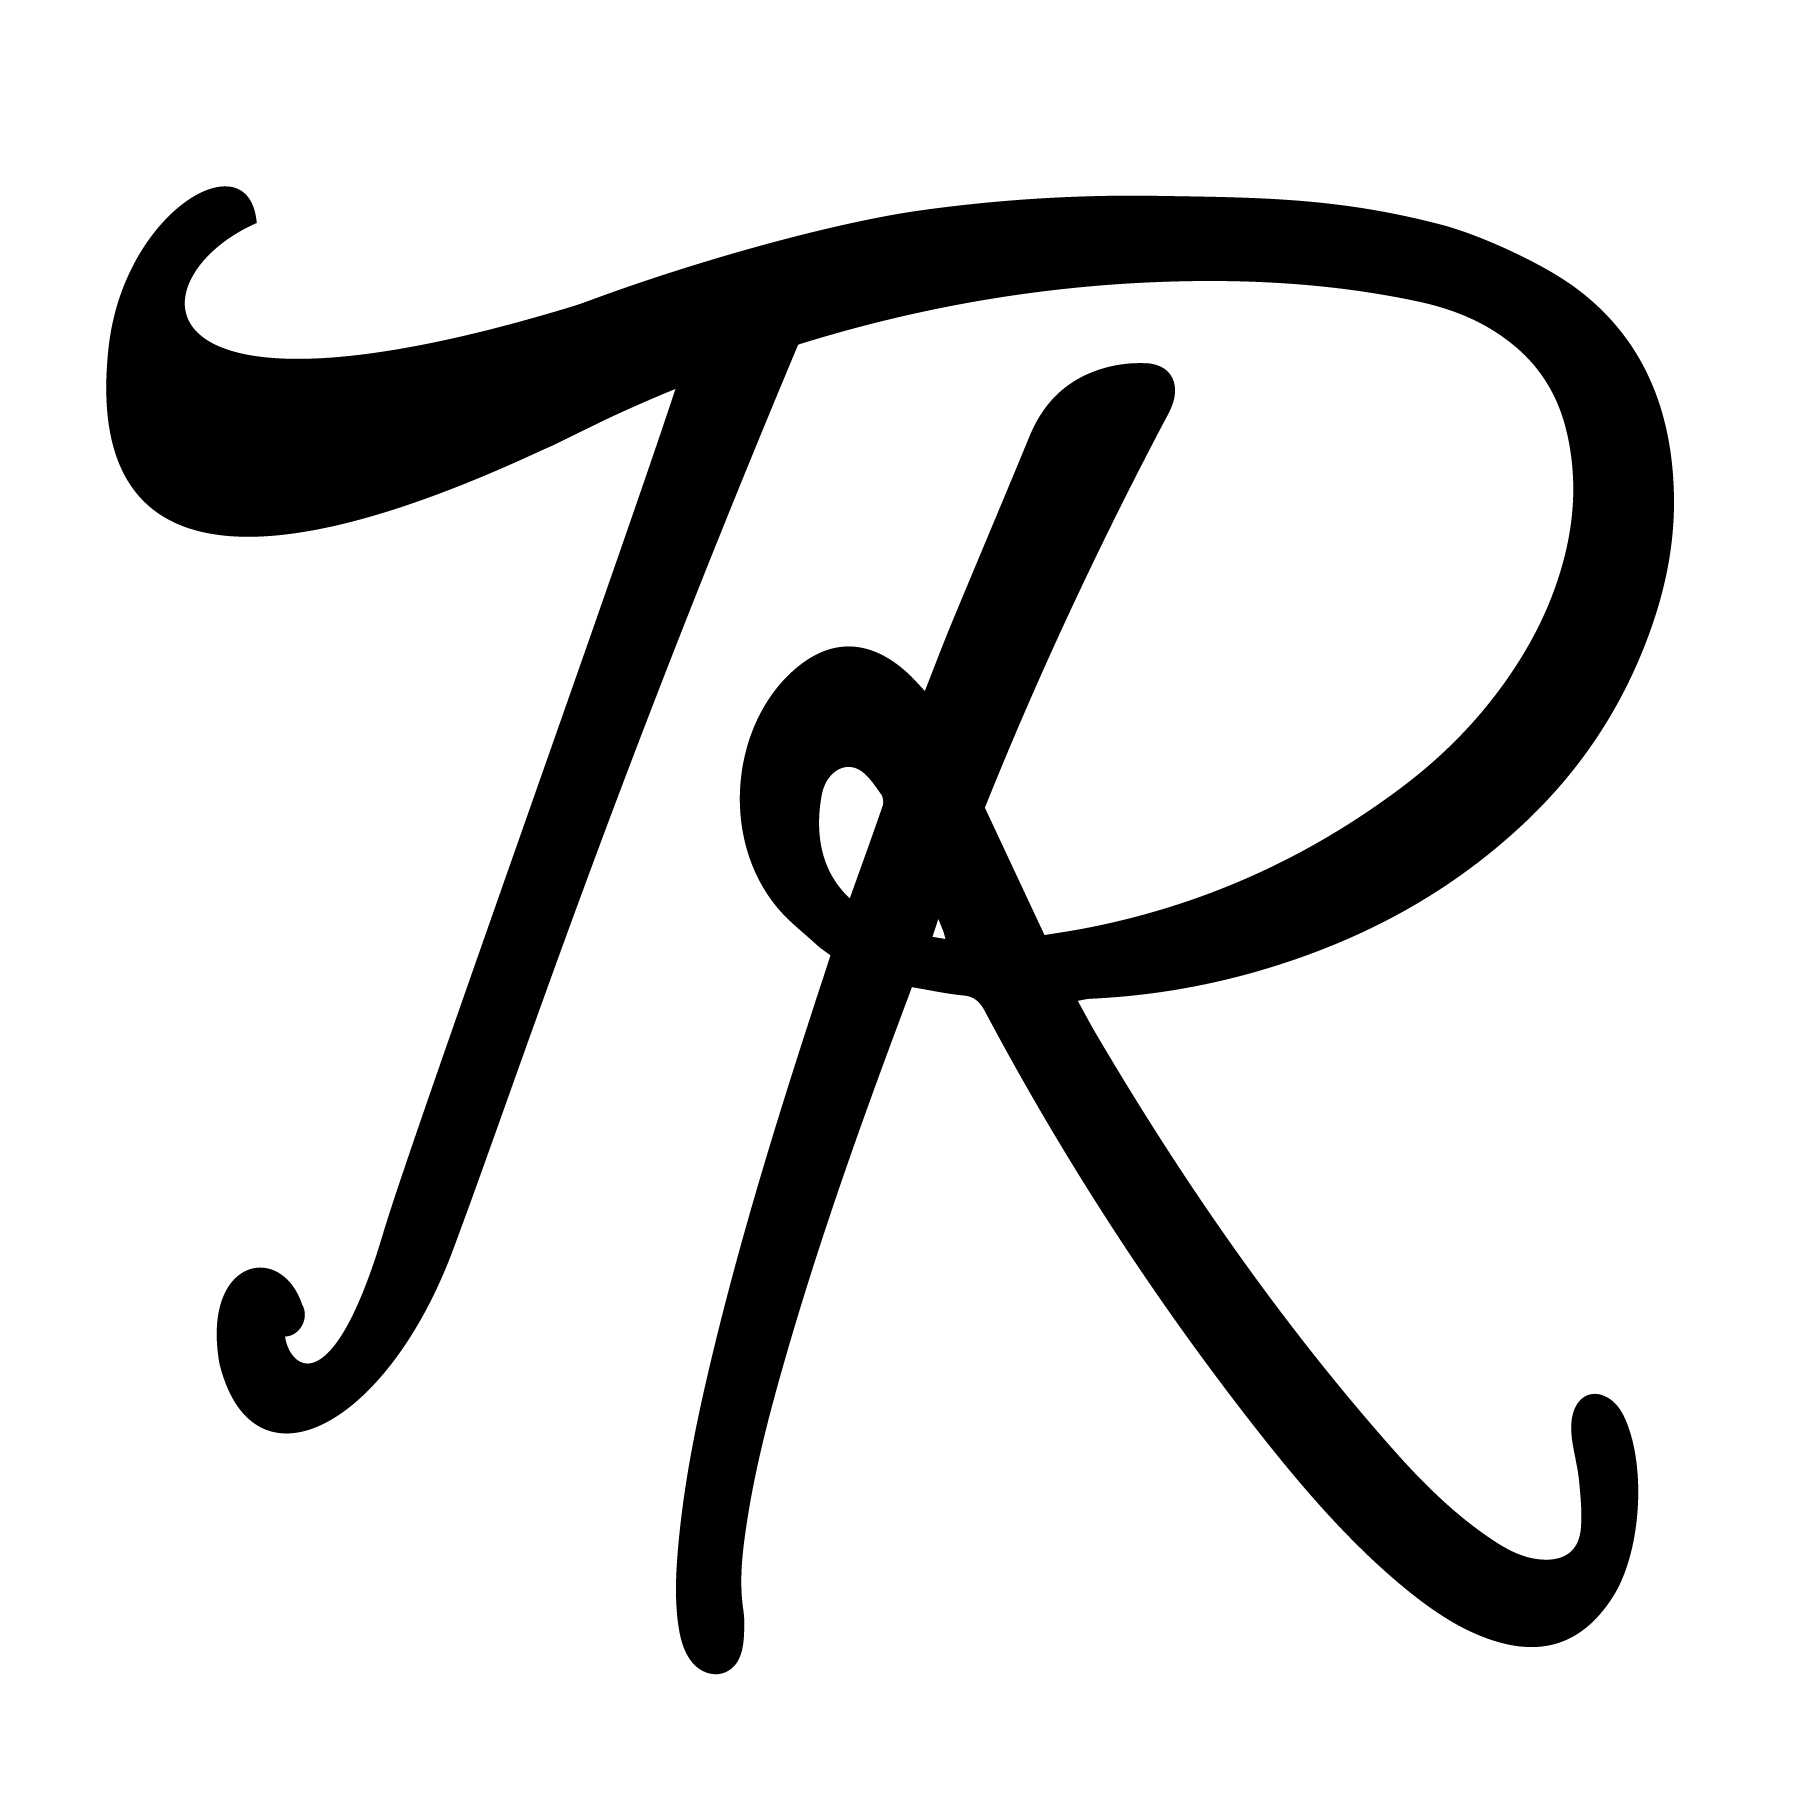 HTR-logo-01.png